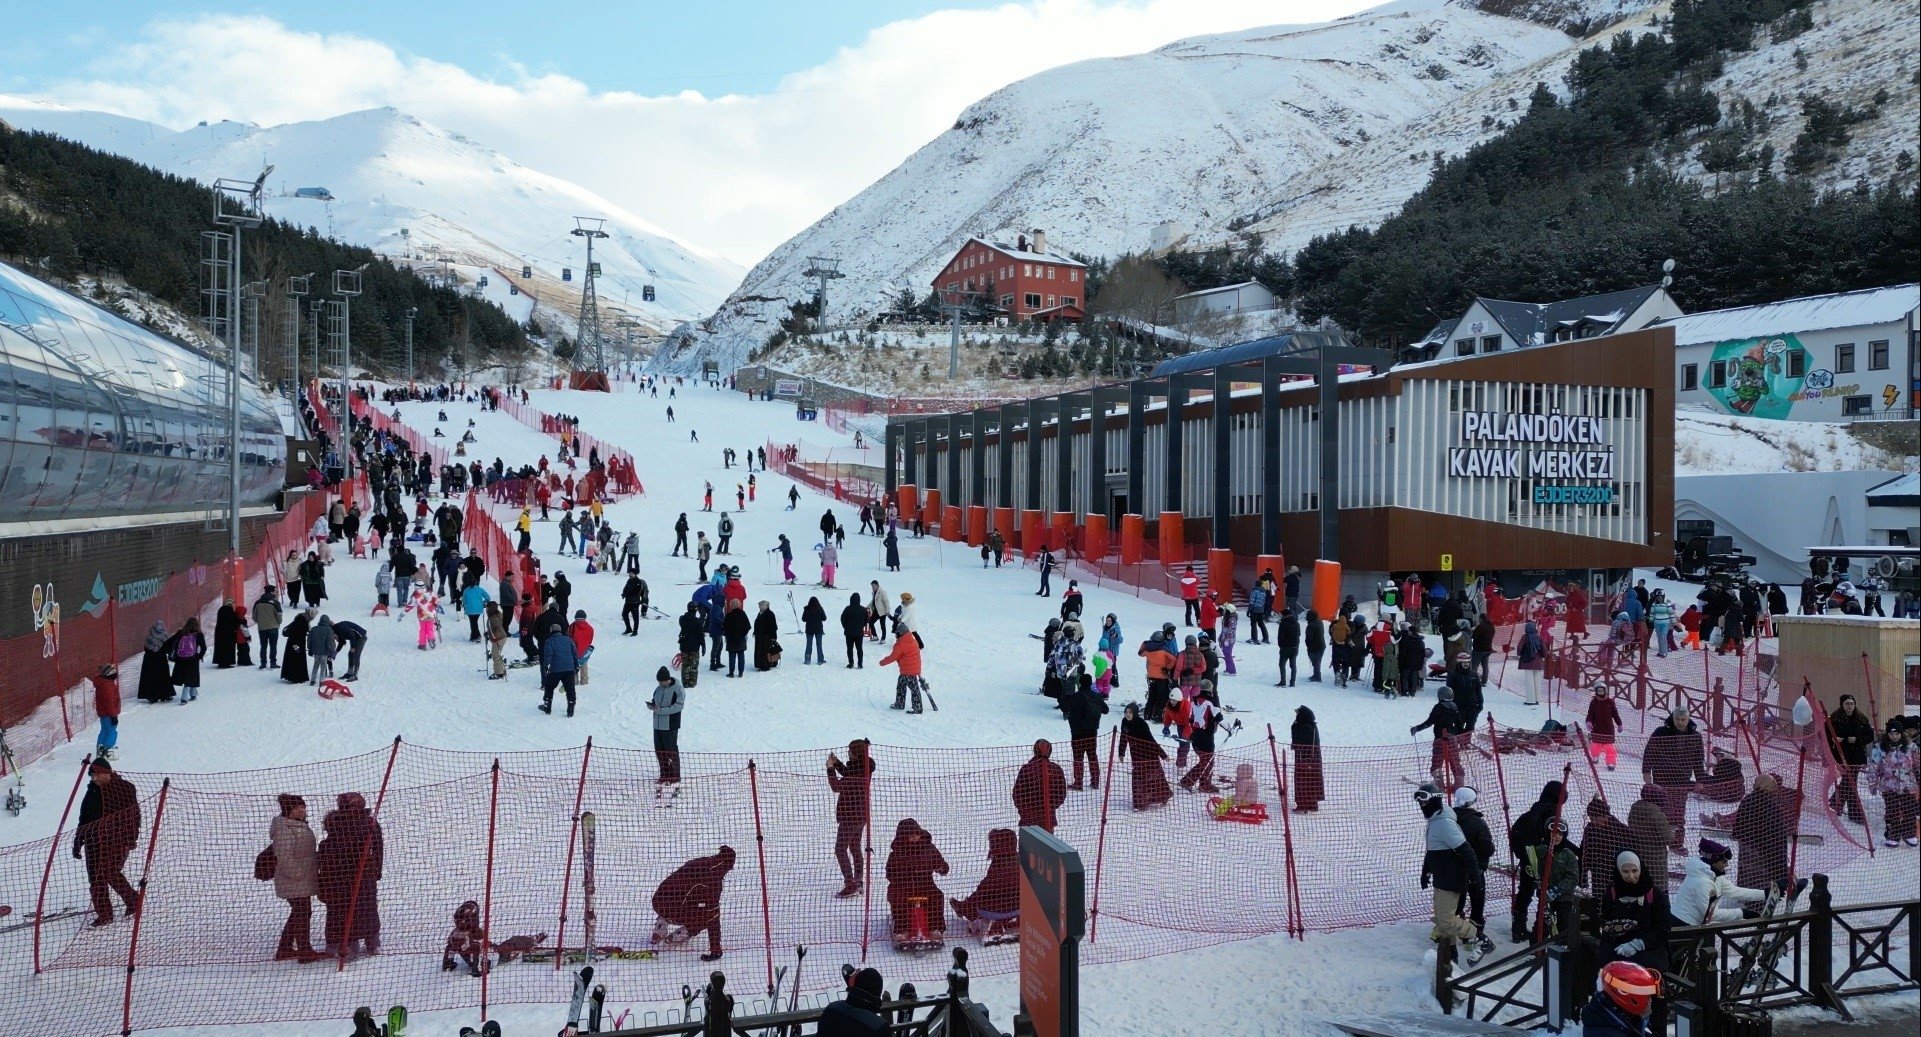 Palandöken skianlegg, et av de viktigste skisentrene i landet, ble oversvømmet av innbyggere i semesterpausen, Erzurum, østlige Türkiye, 30. januar 2023. (IHA Photo)